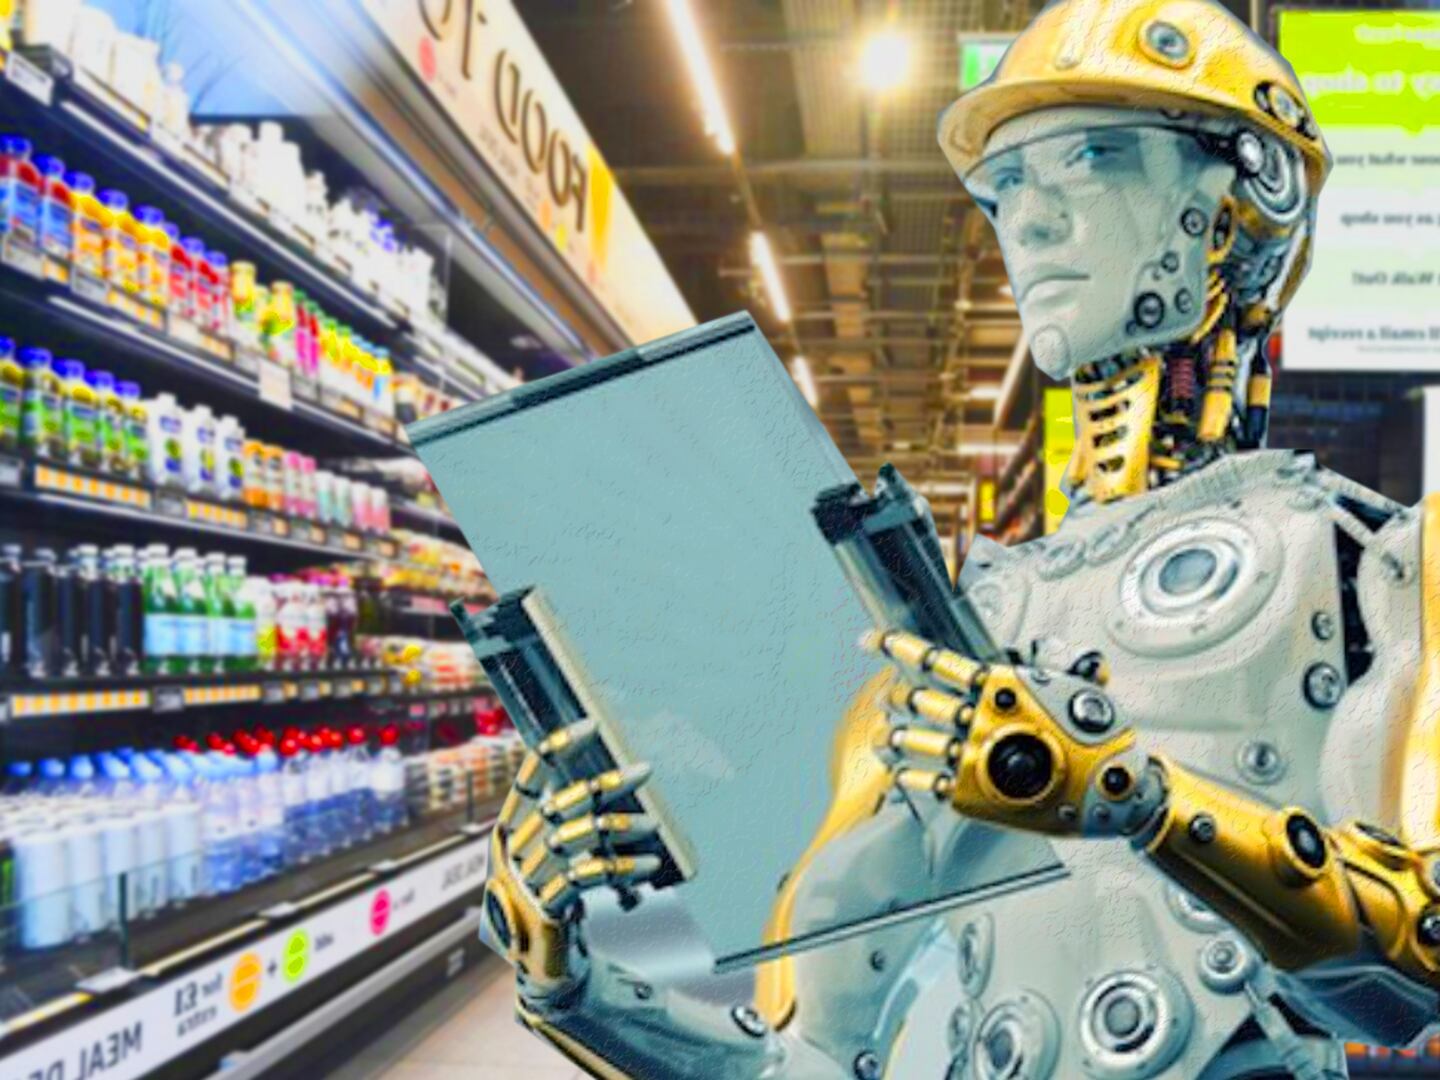 Así serán los nuevos supermercados  Fresh, que estarán llenos  tecnología inteligente para ayudar a sus clientes - CNN Video